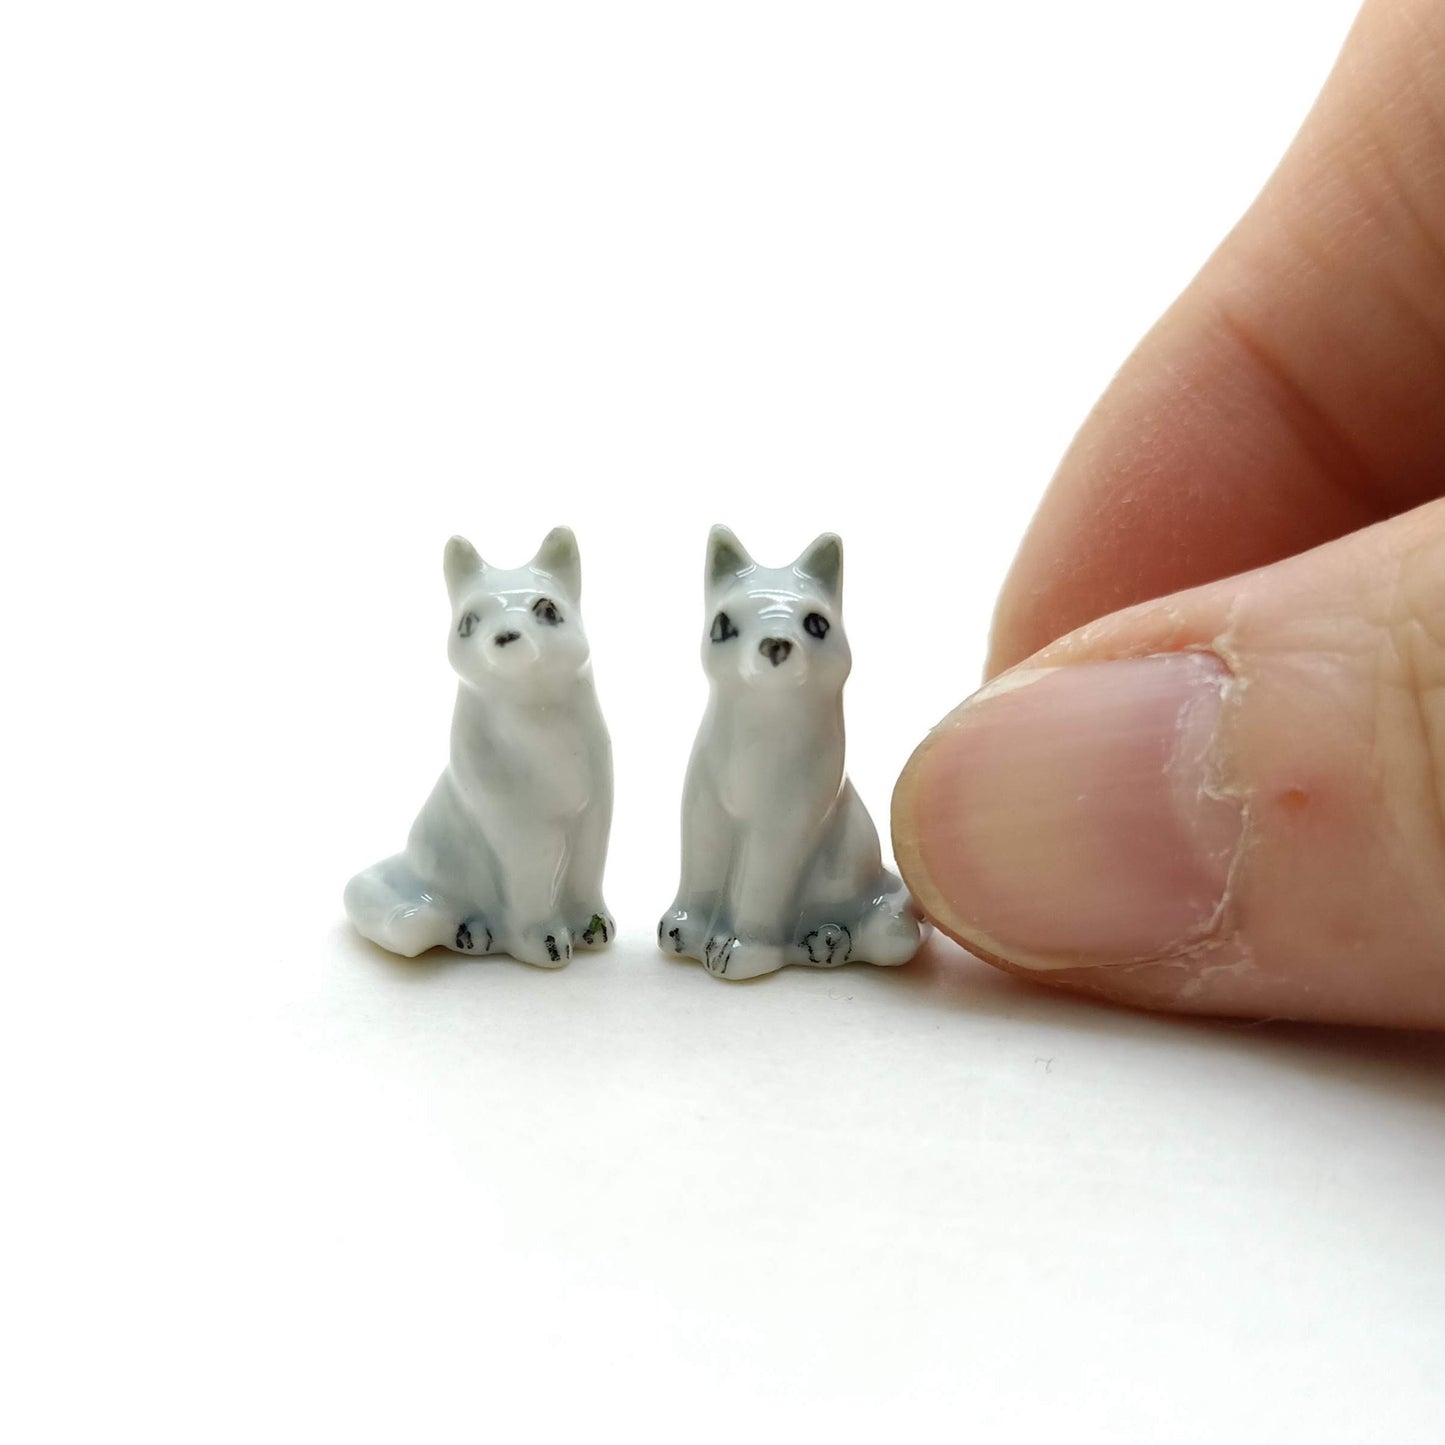 2 Tiny Foxes